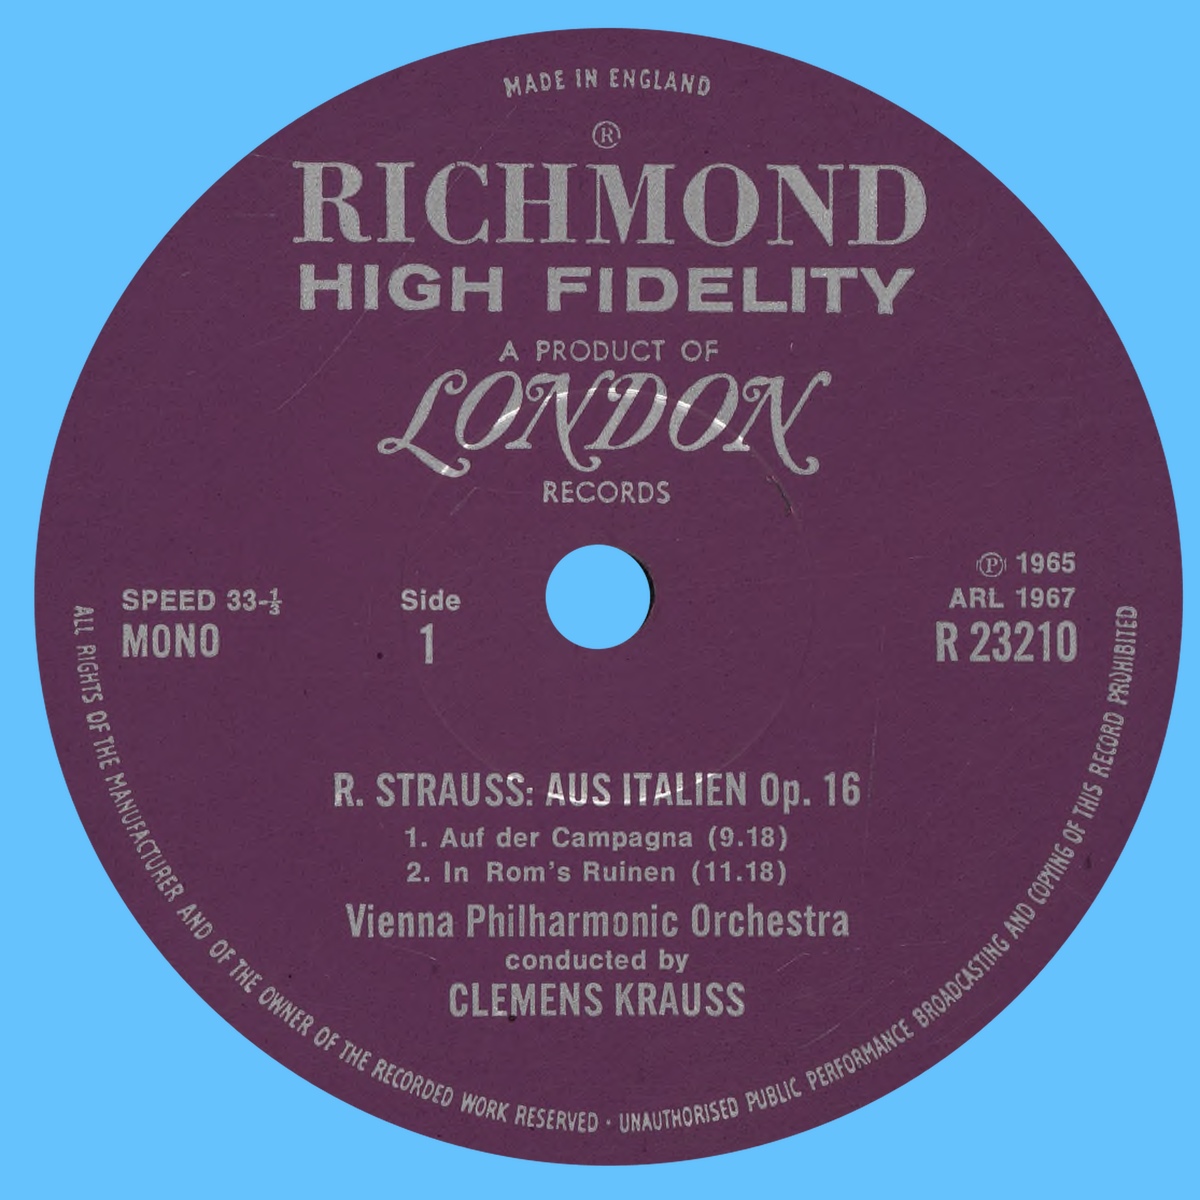 Étiquette recto du disque Decca LONDON R 23210